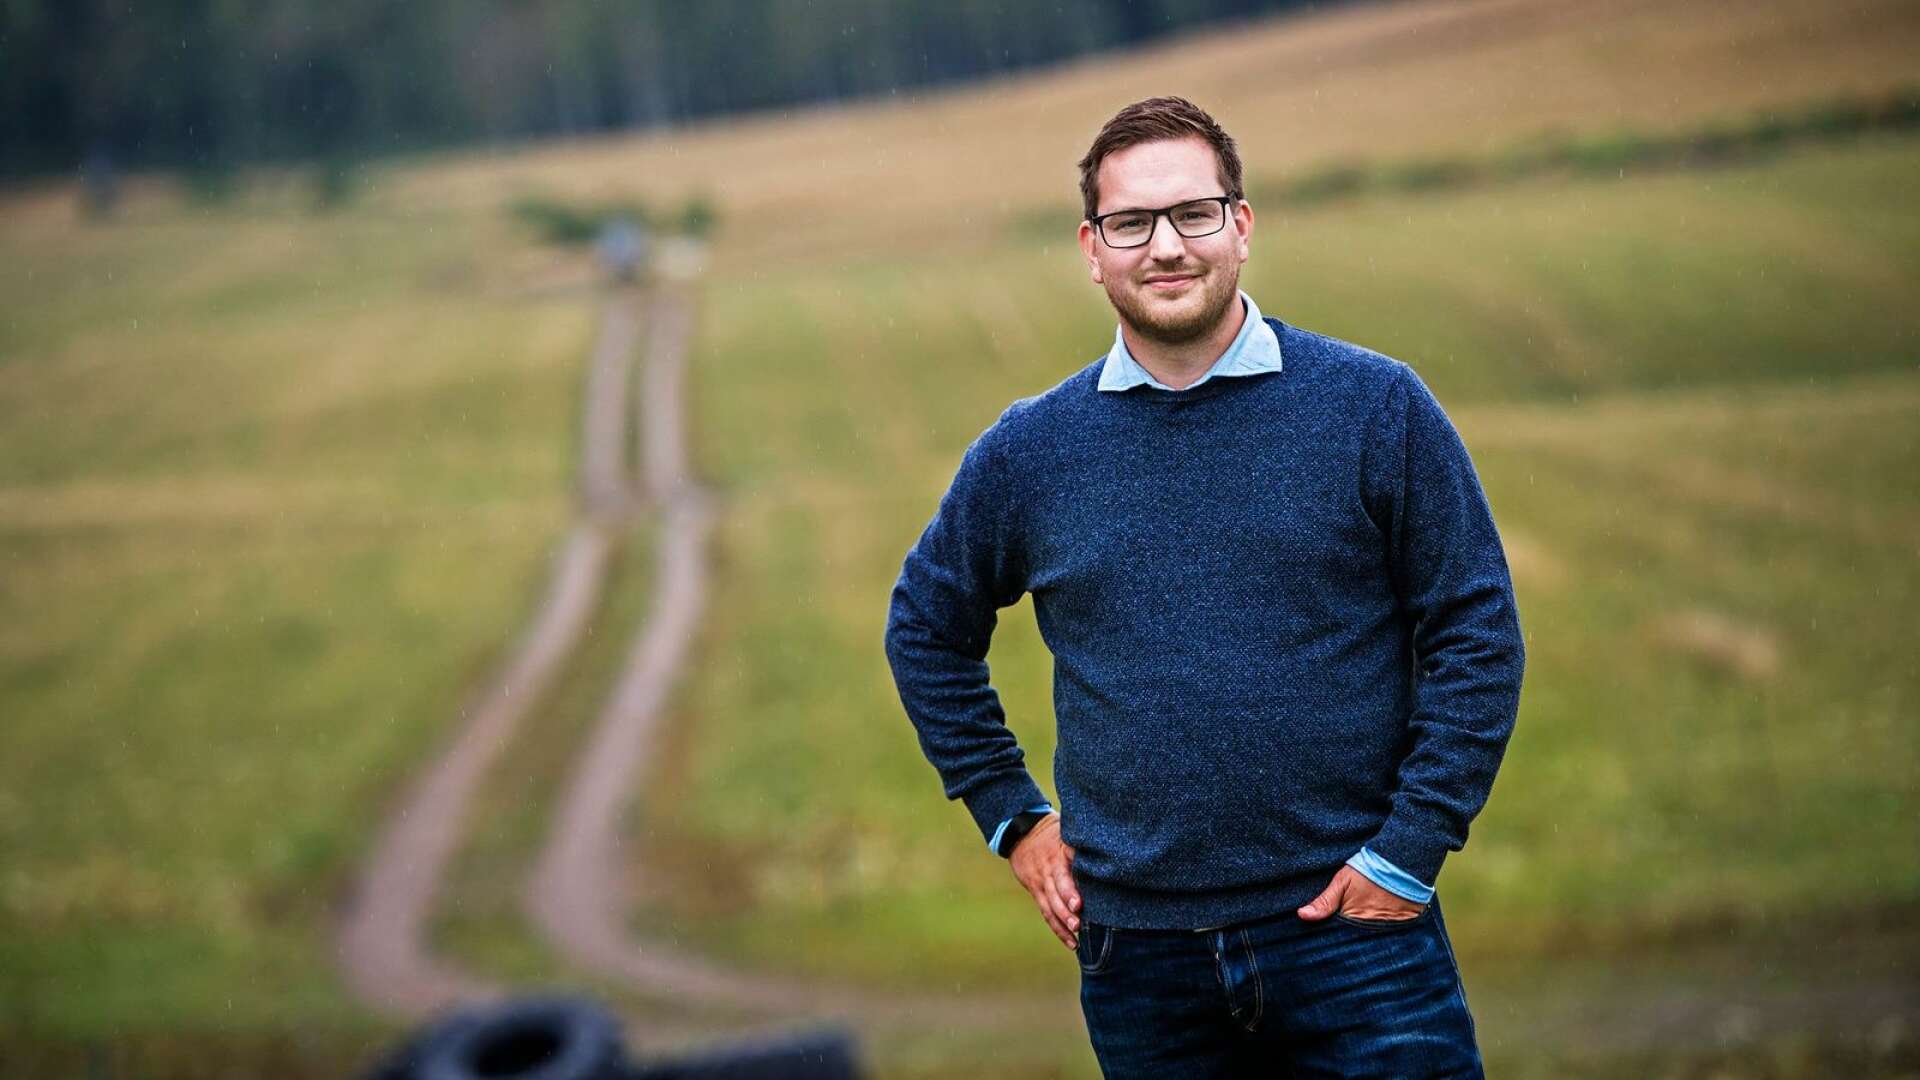  Håkan Svenneling (V) är en bra landsbygdskandidat enligt V i Värmland.